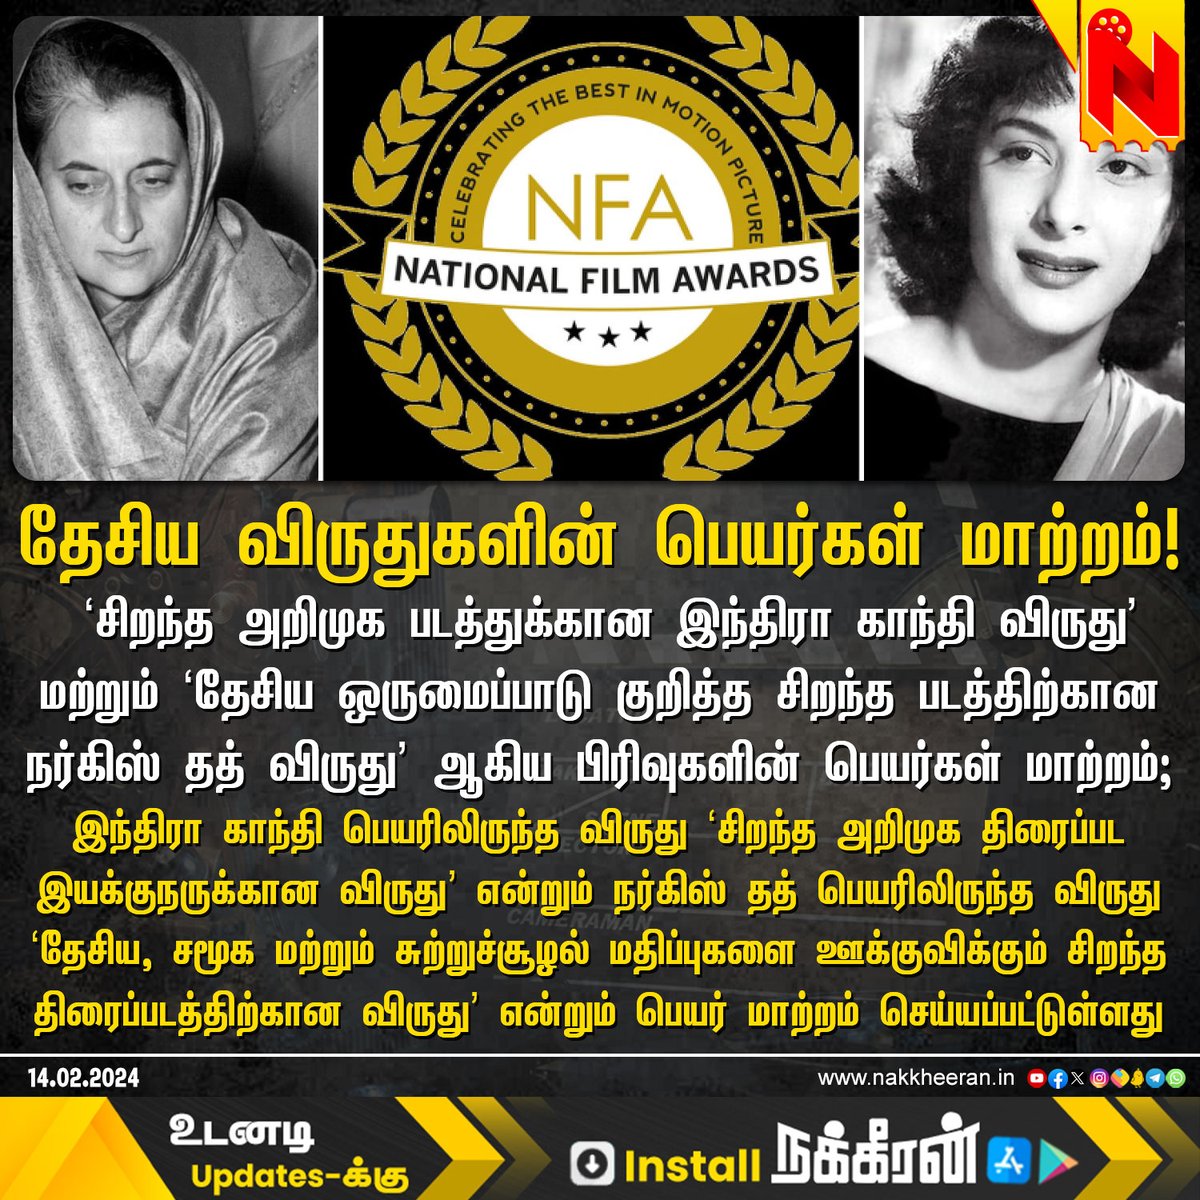 தேசிய விருதுகளின் பெயர்கள் மாற்றம்! 

#NationalFilmAwards #IndiraGandhi #NargisDutt #NakkheeranStudio